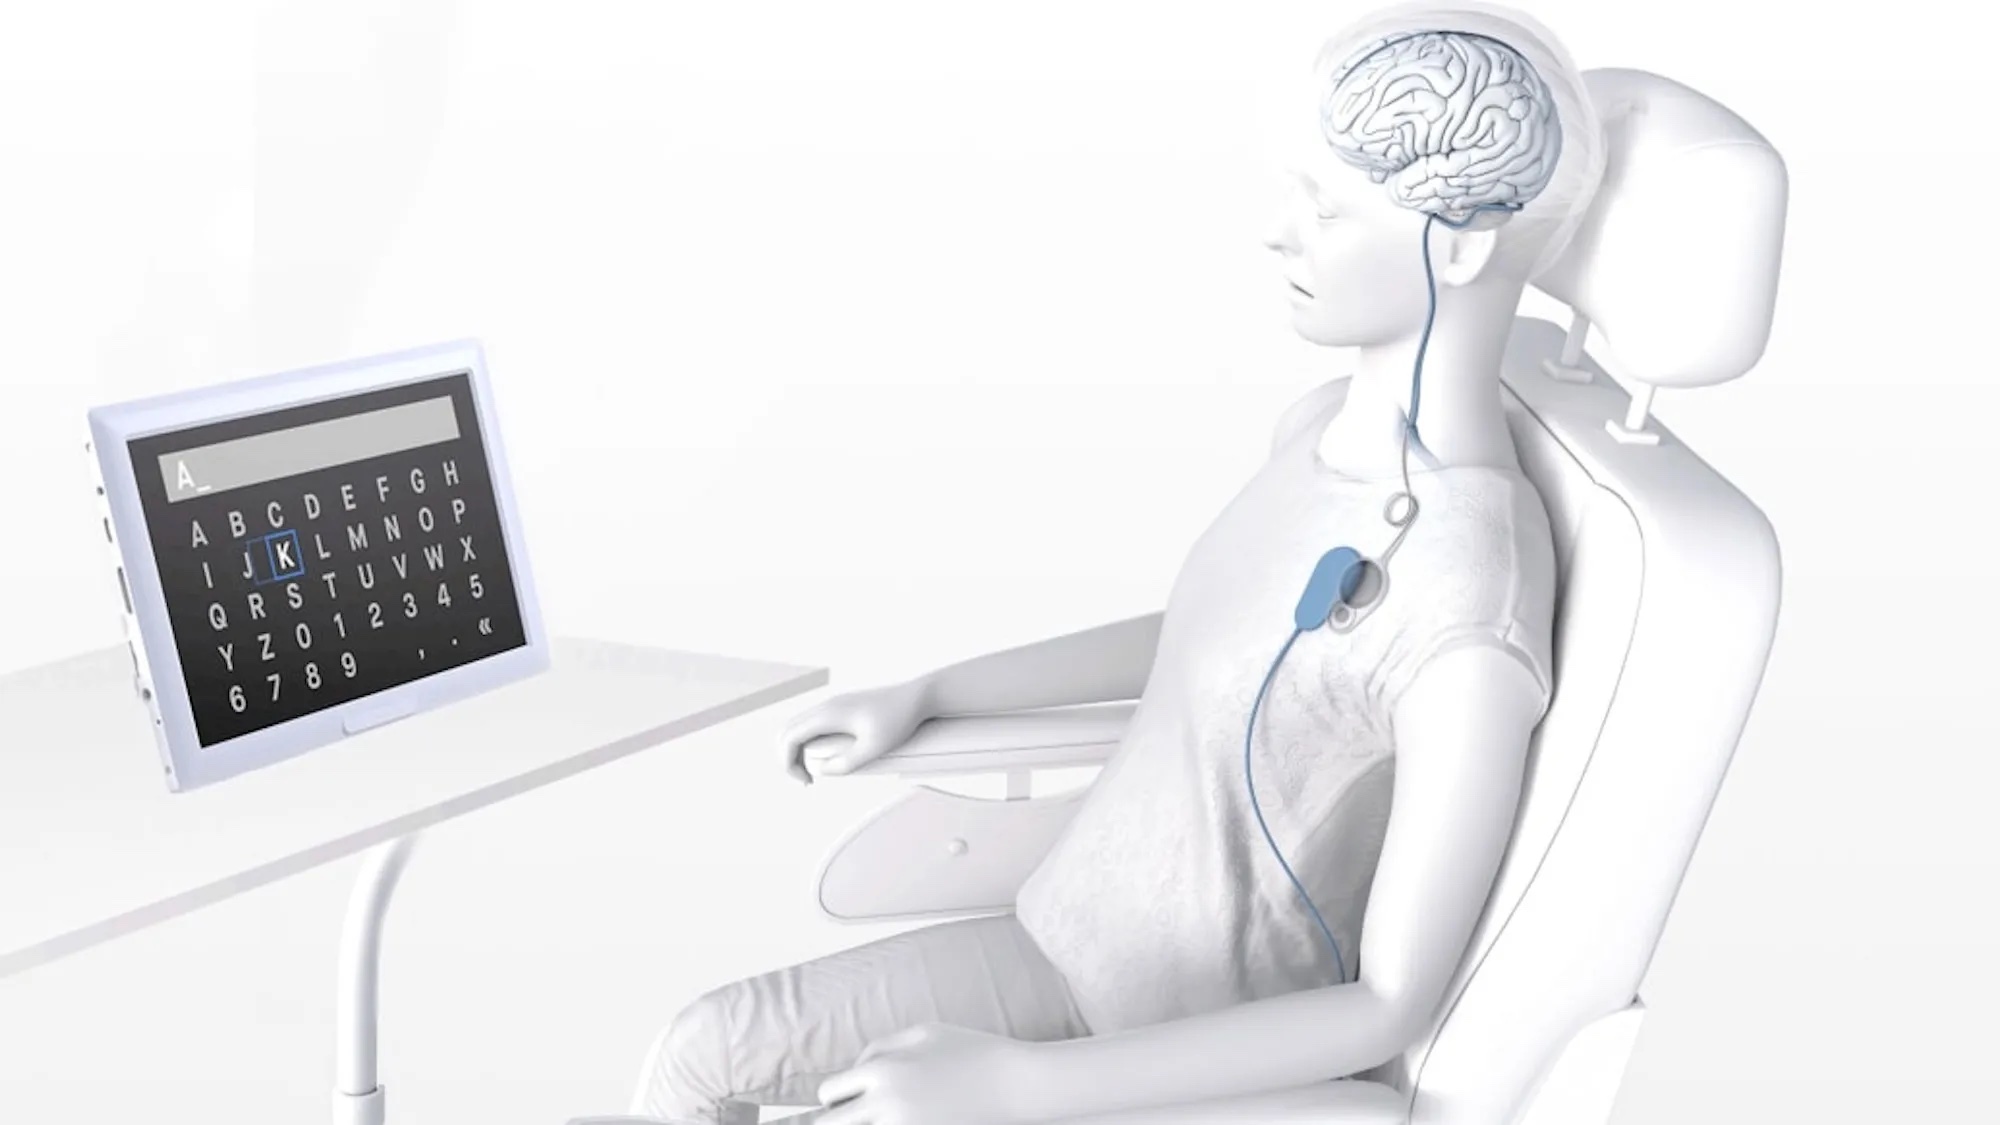 Инженеры создали мозговой имплантат для управления iPhone и iPad силой мысли